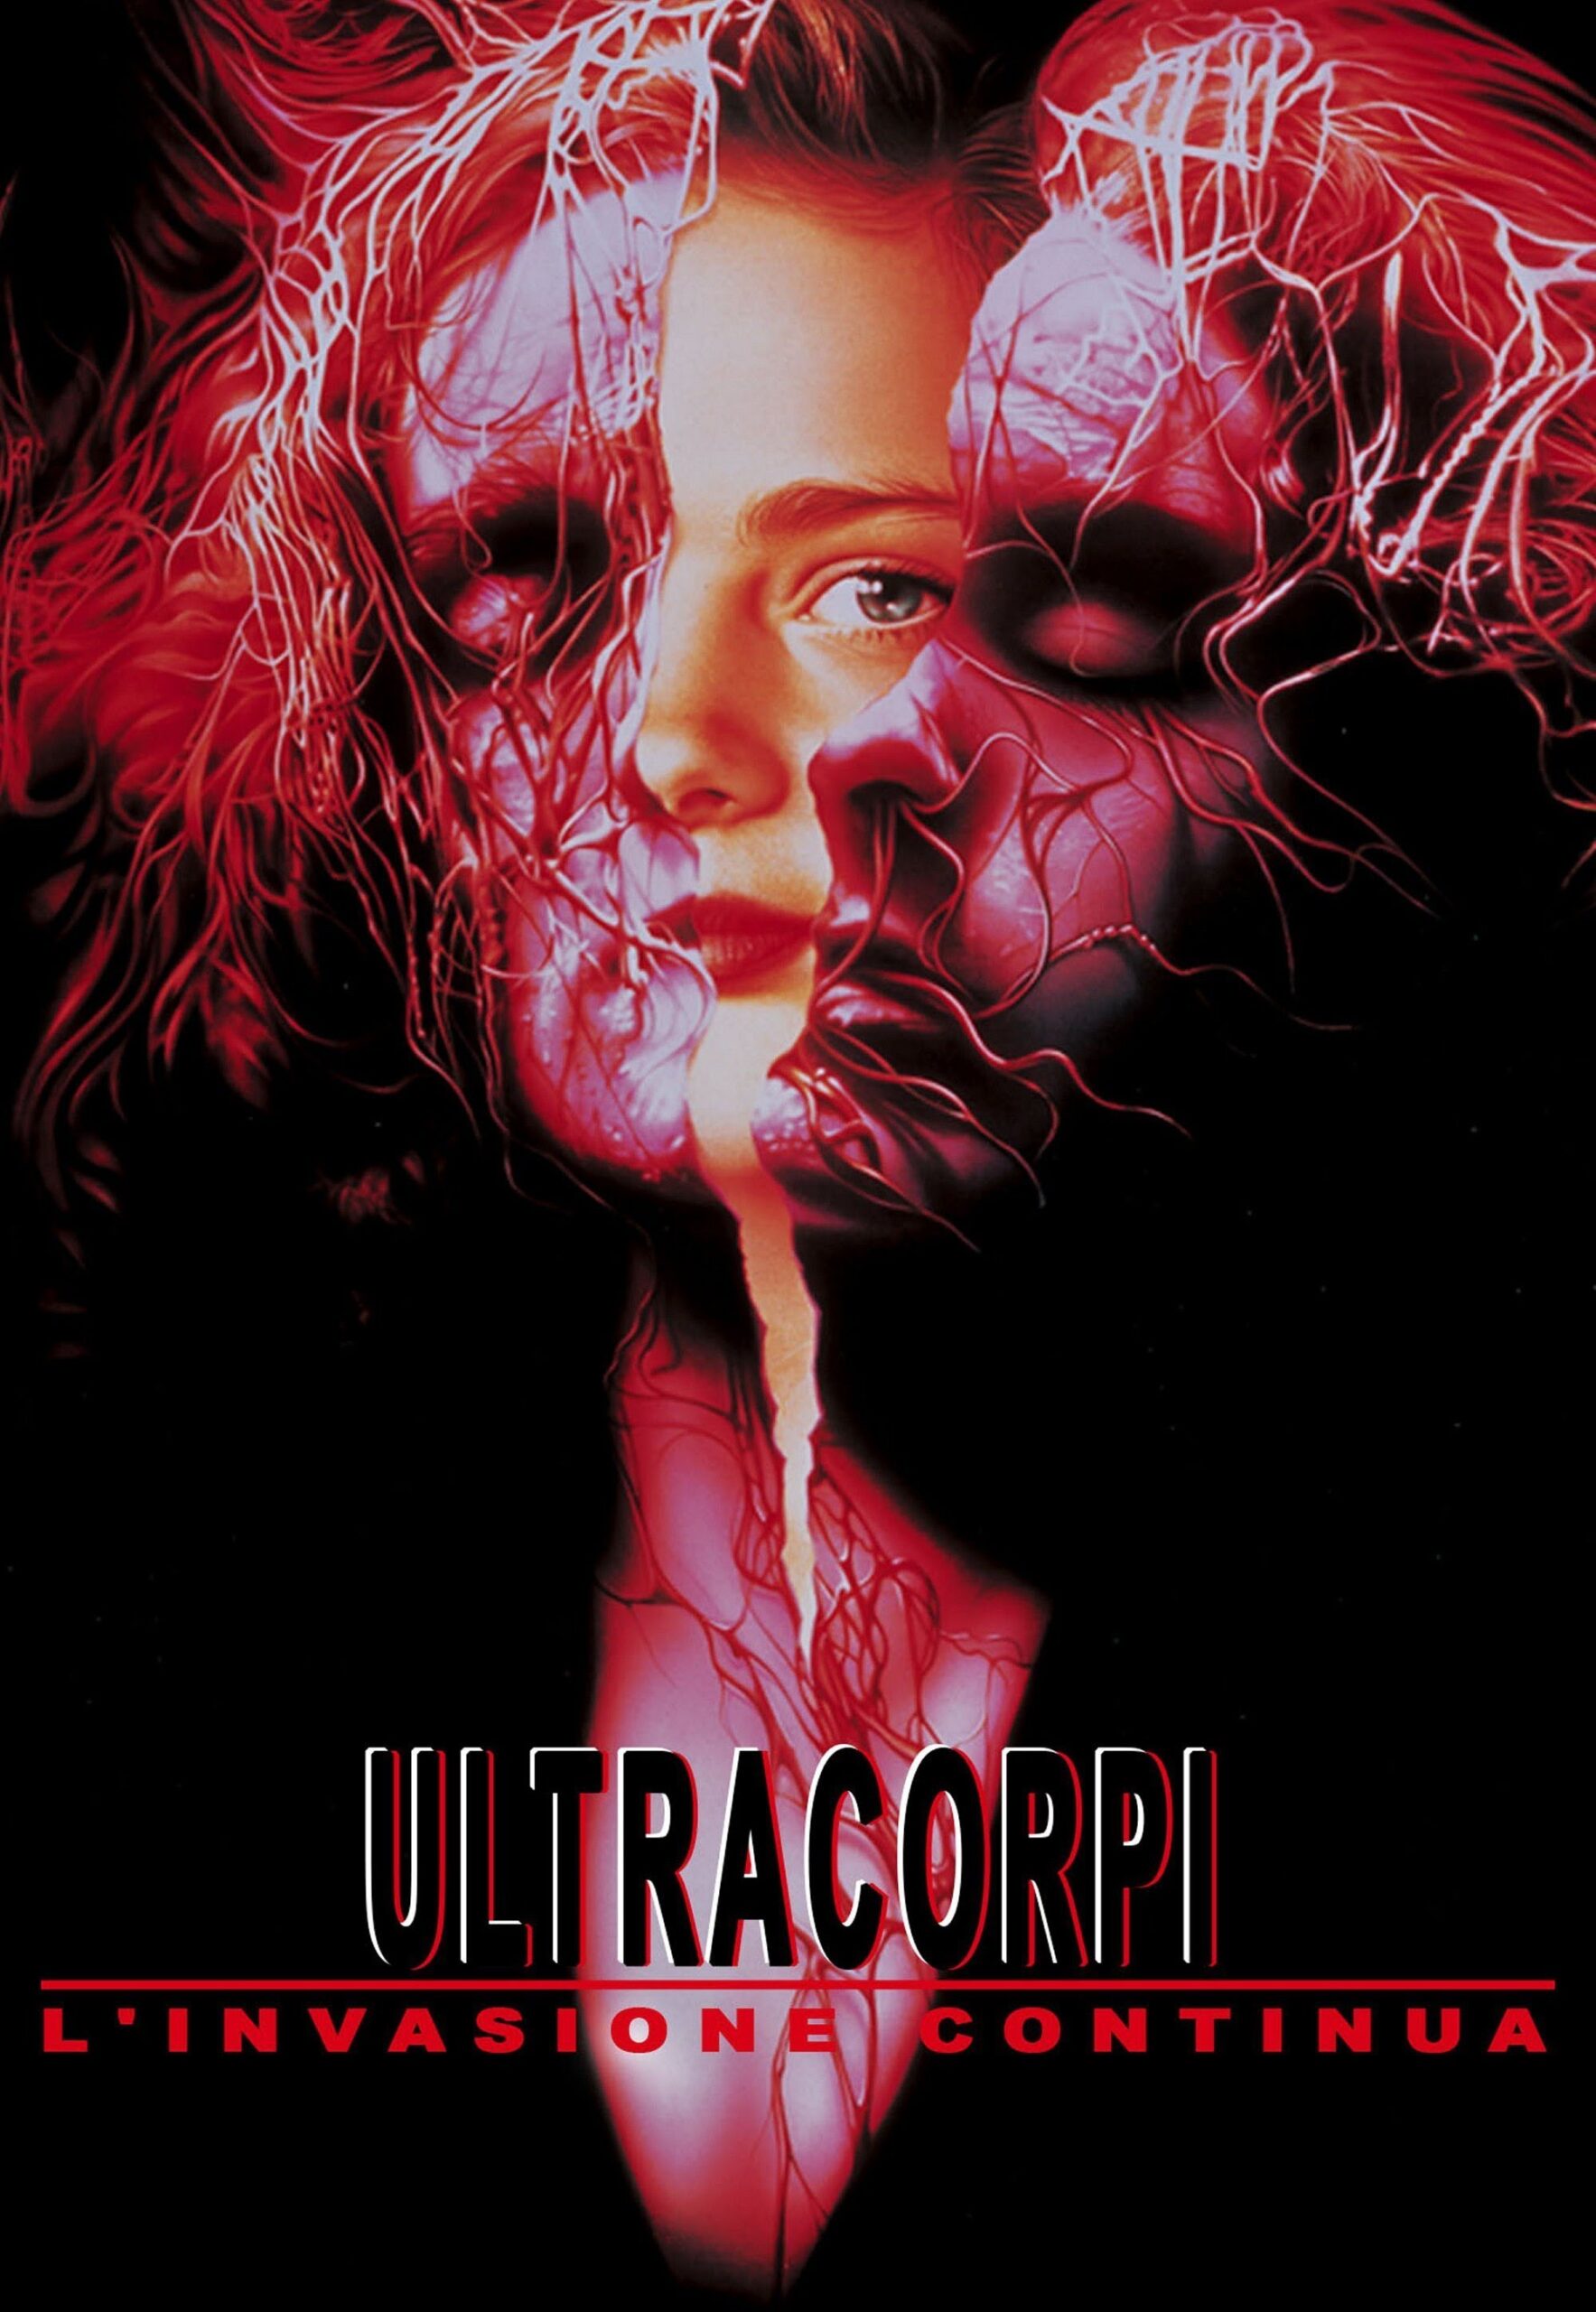 Ultracorpi – L’invasione continua [HD] (1993)